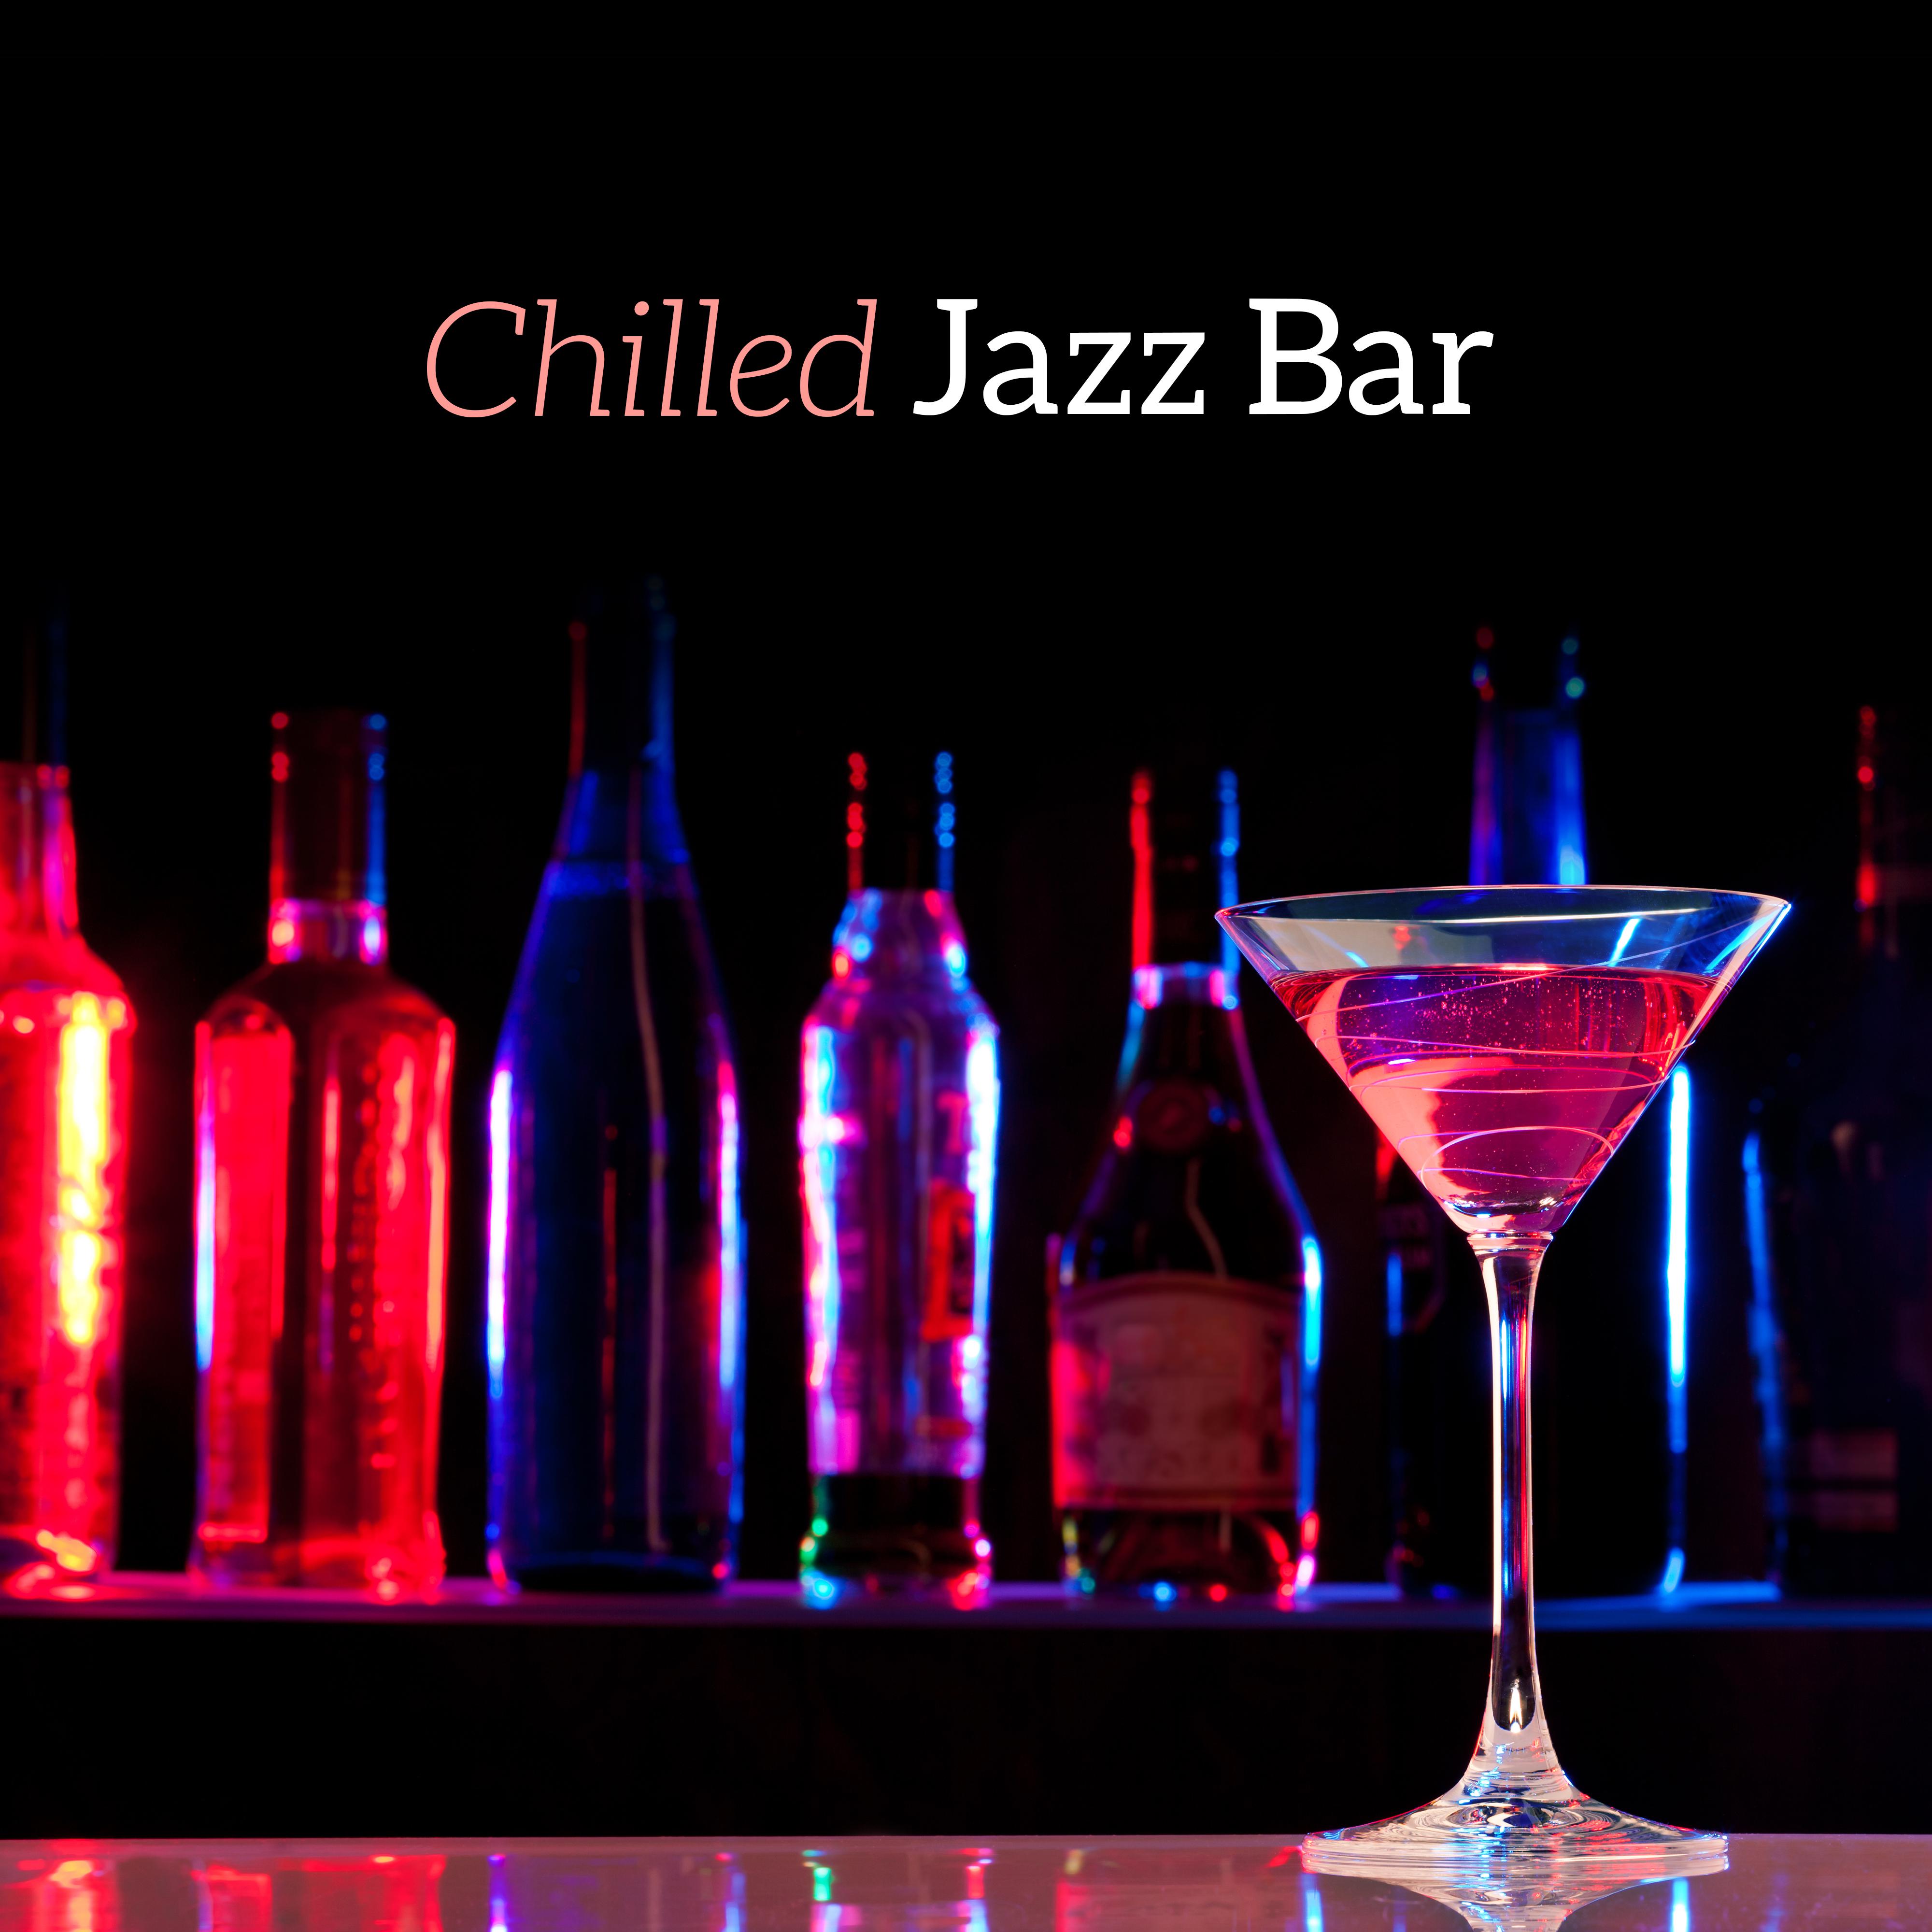 Chilled Jazz Bar